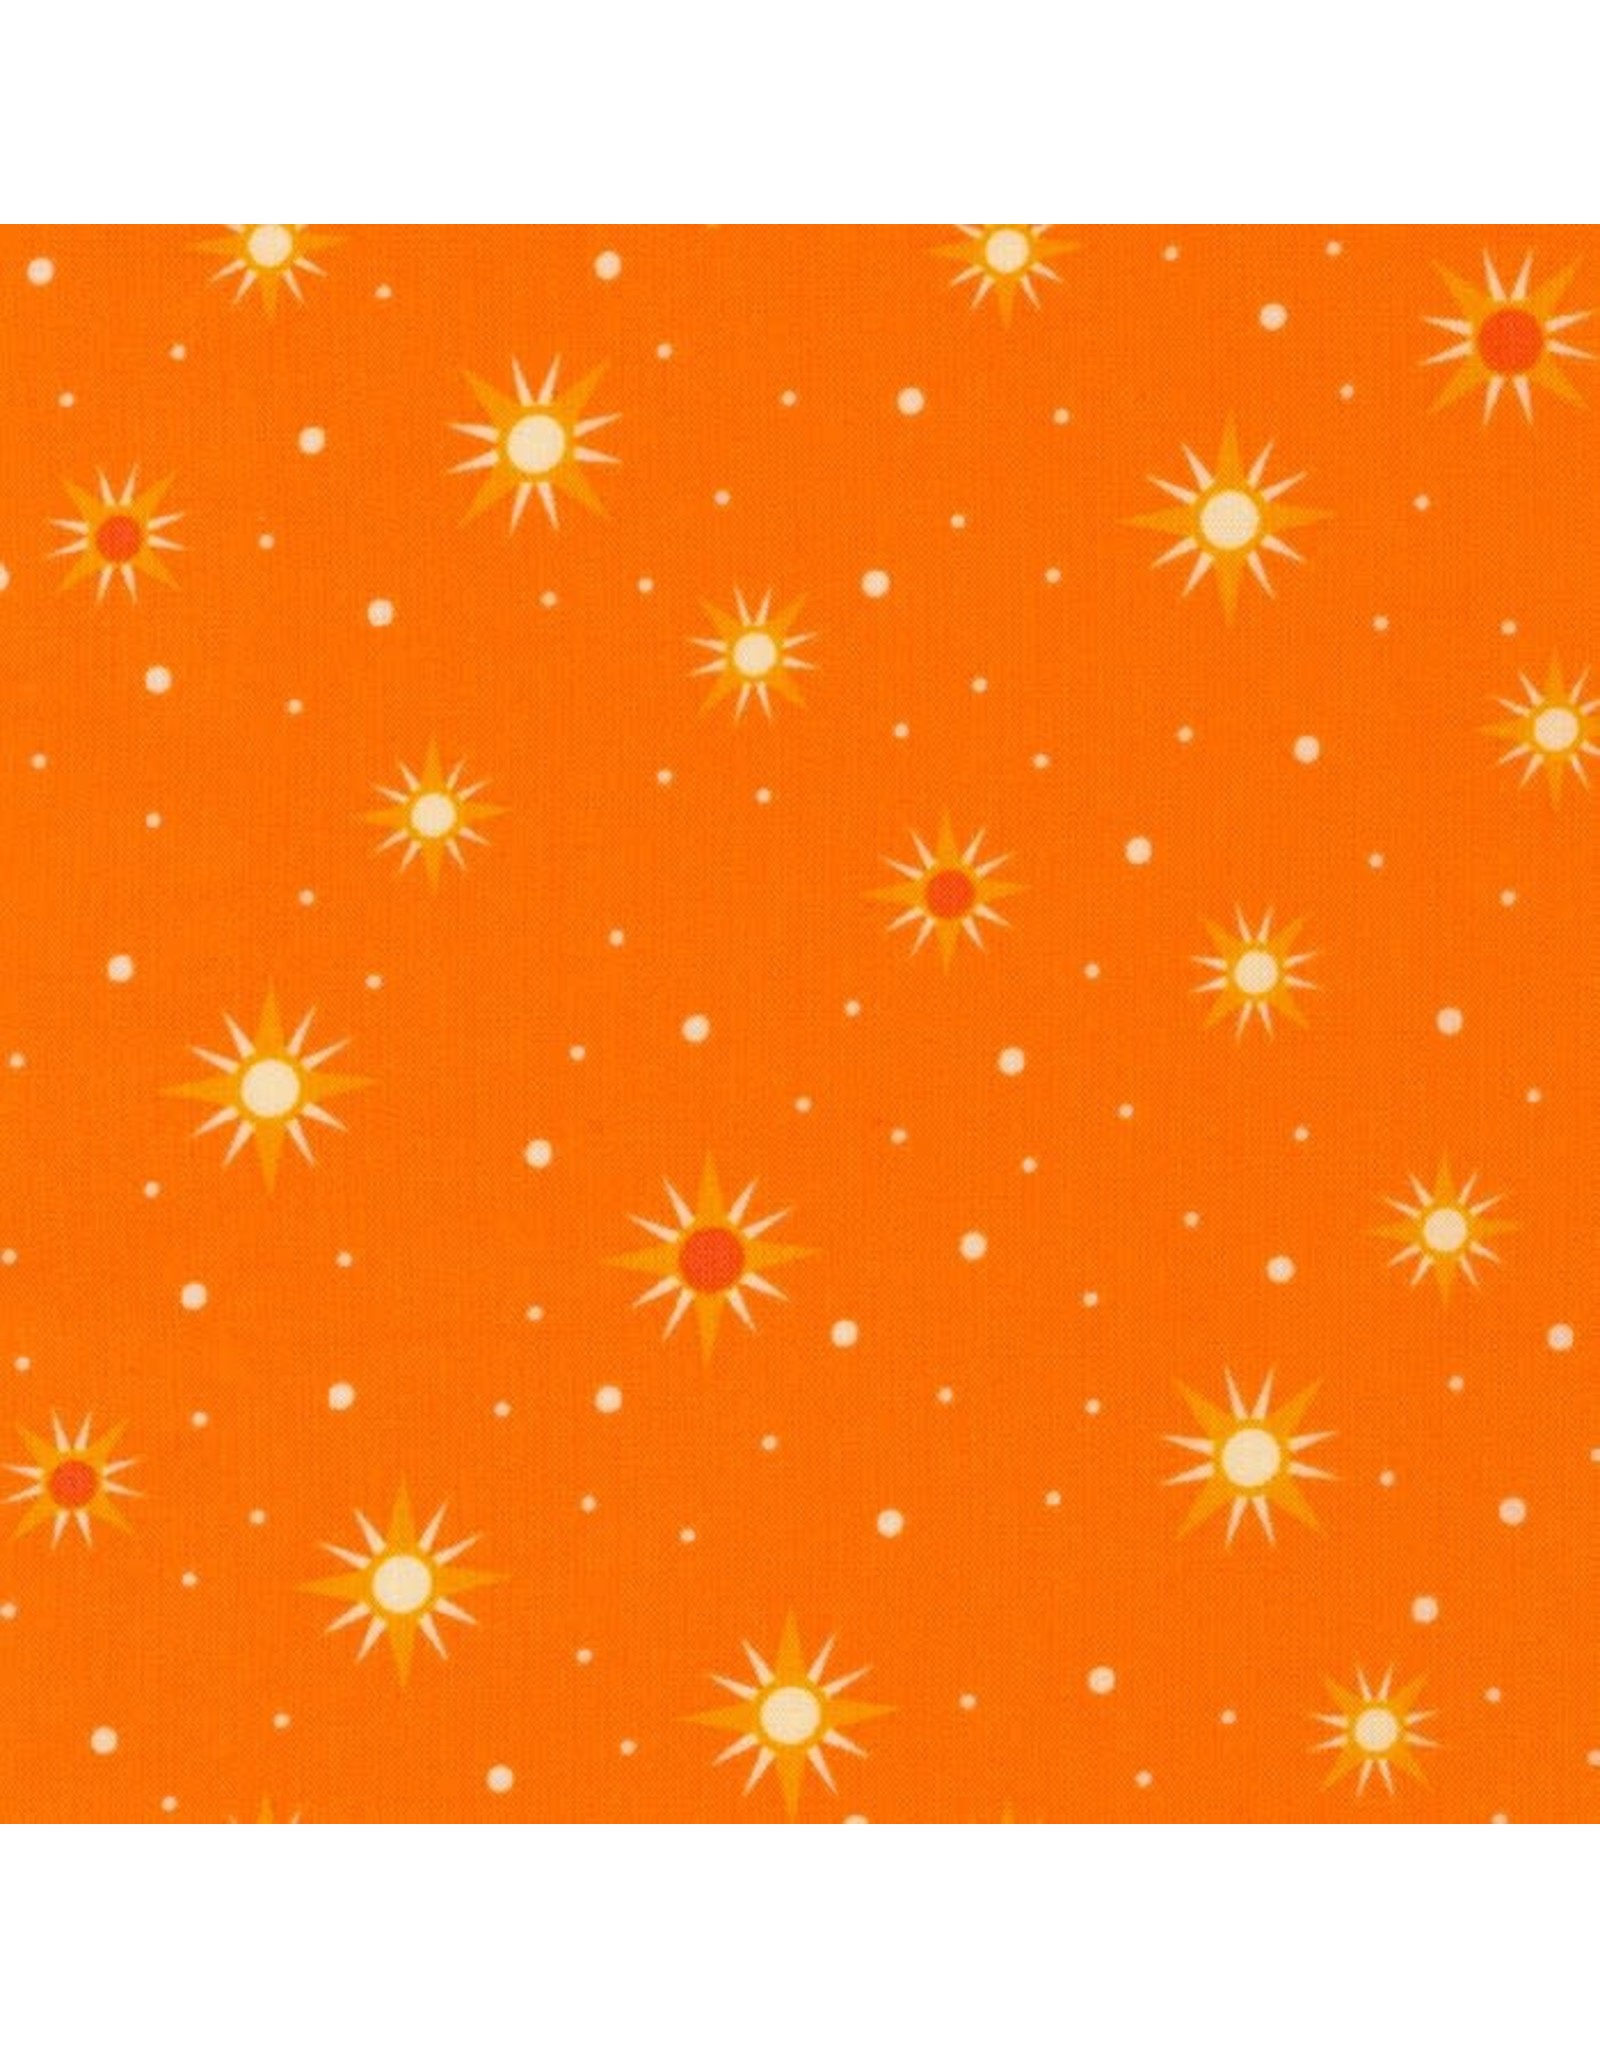 Robert Kaufman Elizabeth Hartman - Planetarium - Stars Orange - AZH-20854-8